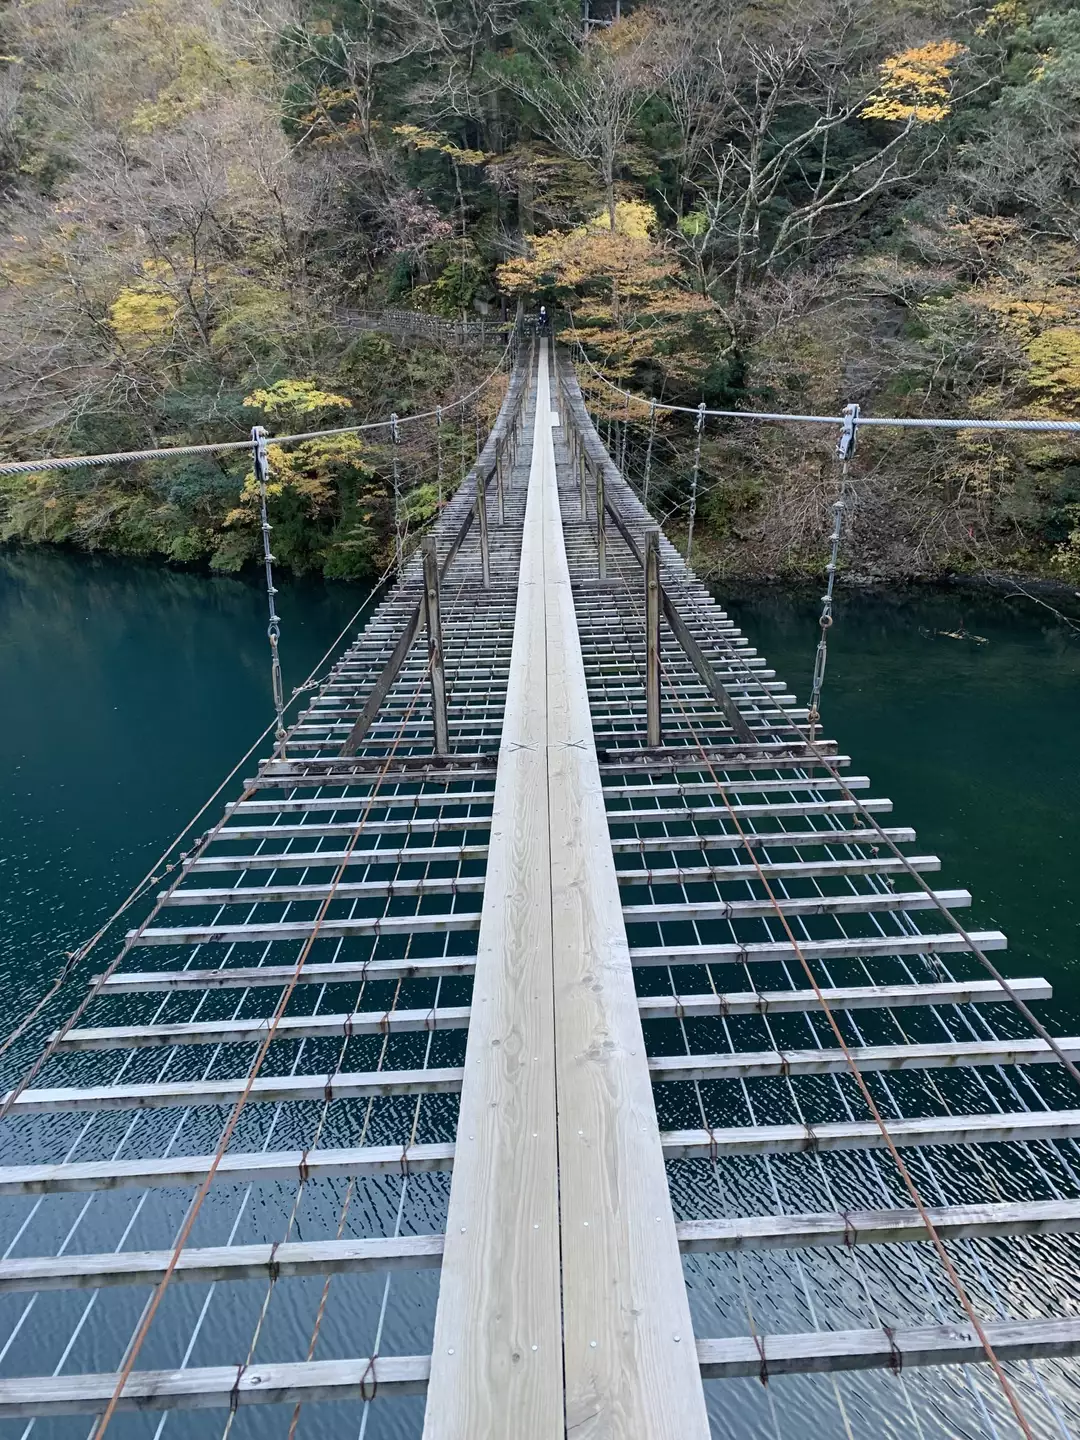 寸又峡 夢の吊橋 外森山 グッチさんの朝日岳の活動日記 Yamap ヤマップ